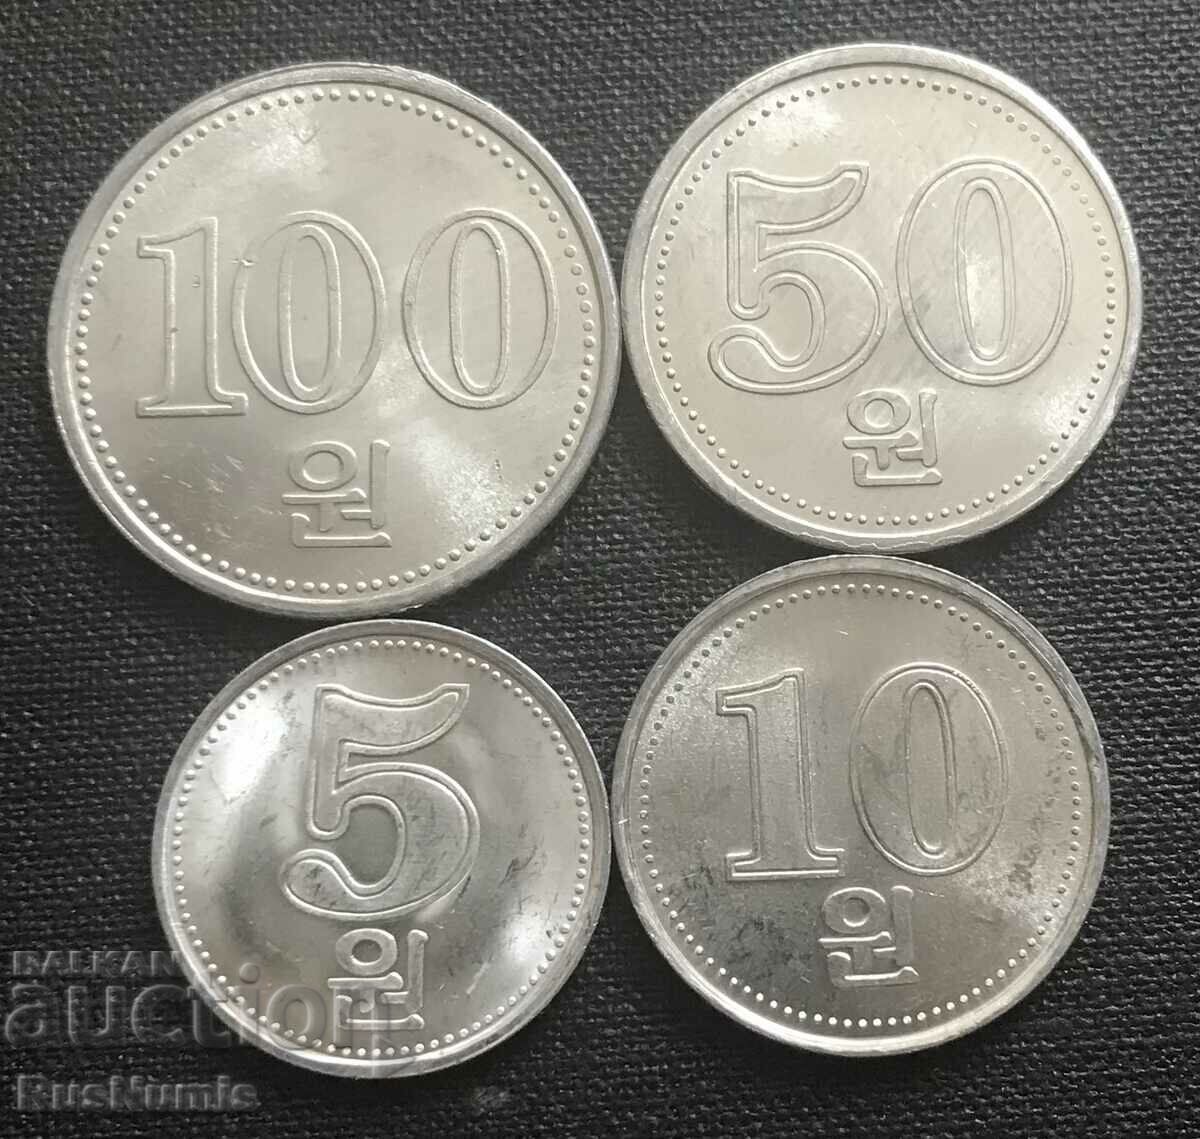 Северна Корея. Лот разменни монети 2005 г. UNC.